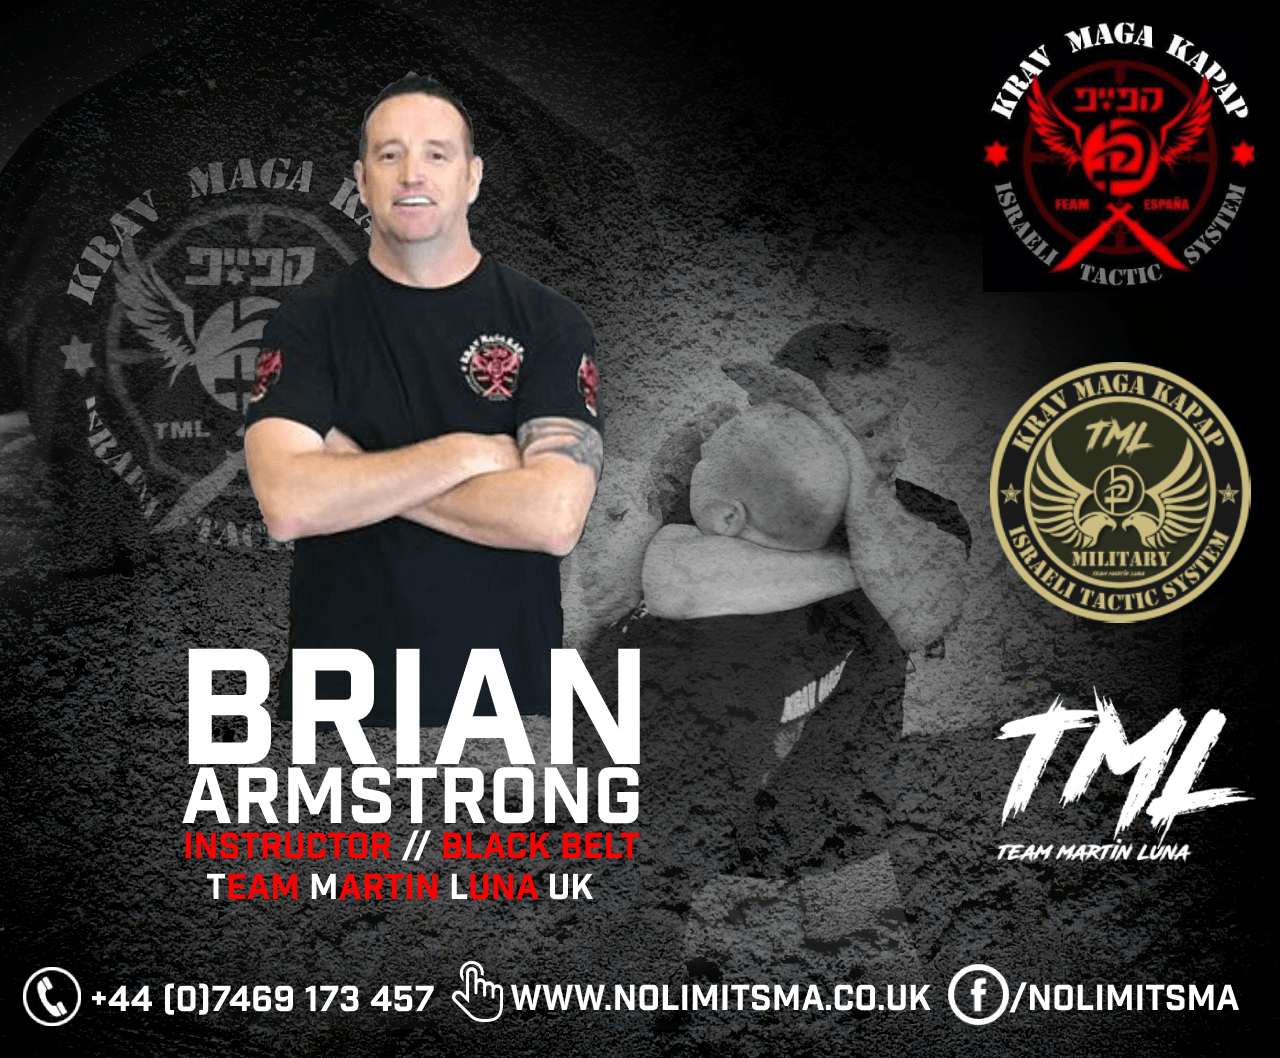 Brian Armstrong (pictured) is a Krav Maga Kapap Black Belt under International Master, Martin Luna. This image shows that information alongside the Krav Maga and Team Martin Luna emblem.